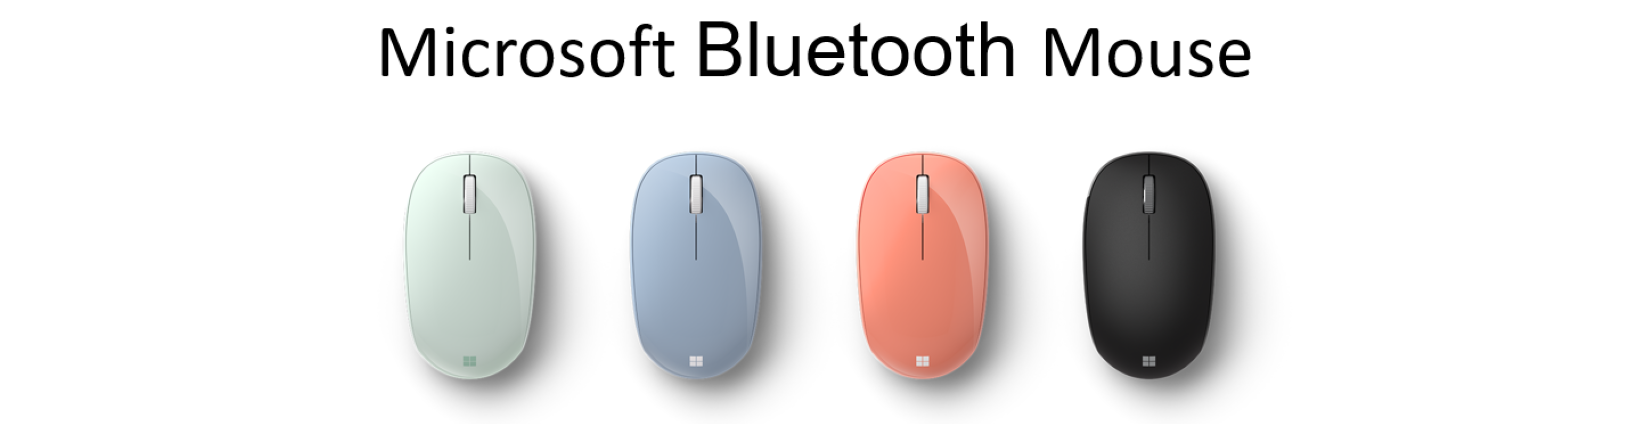 Giới thiệu Chuột không dây Microsoft Bluetooth Mouse (màu xám trắng) (RJN-00065)